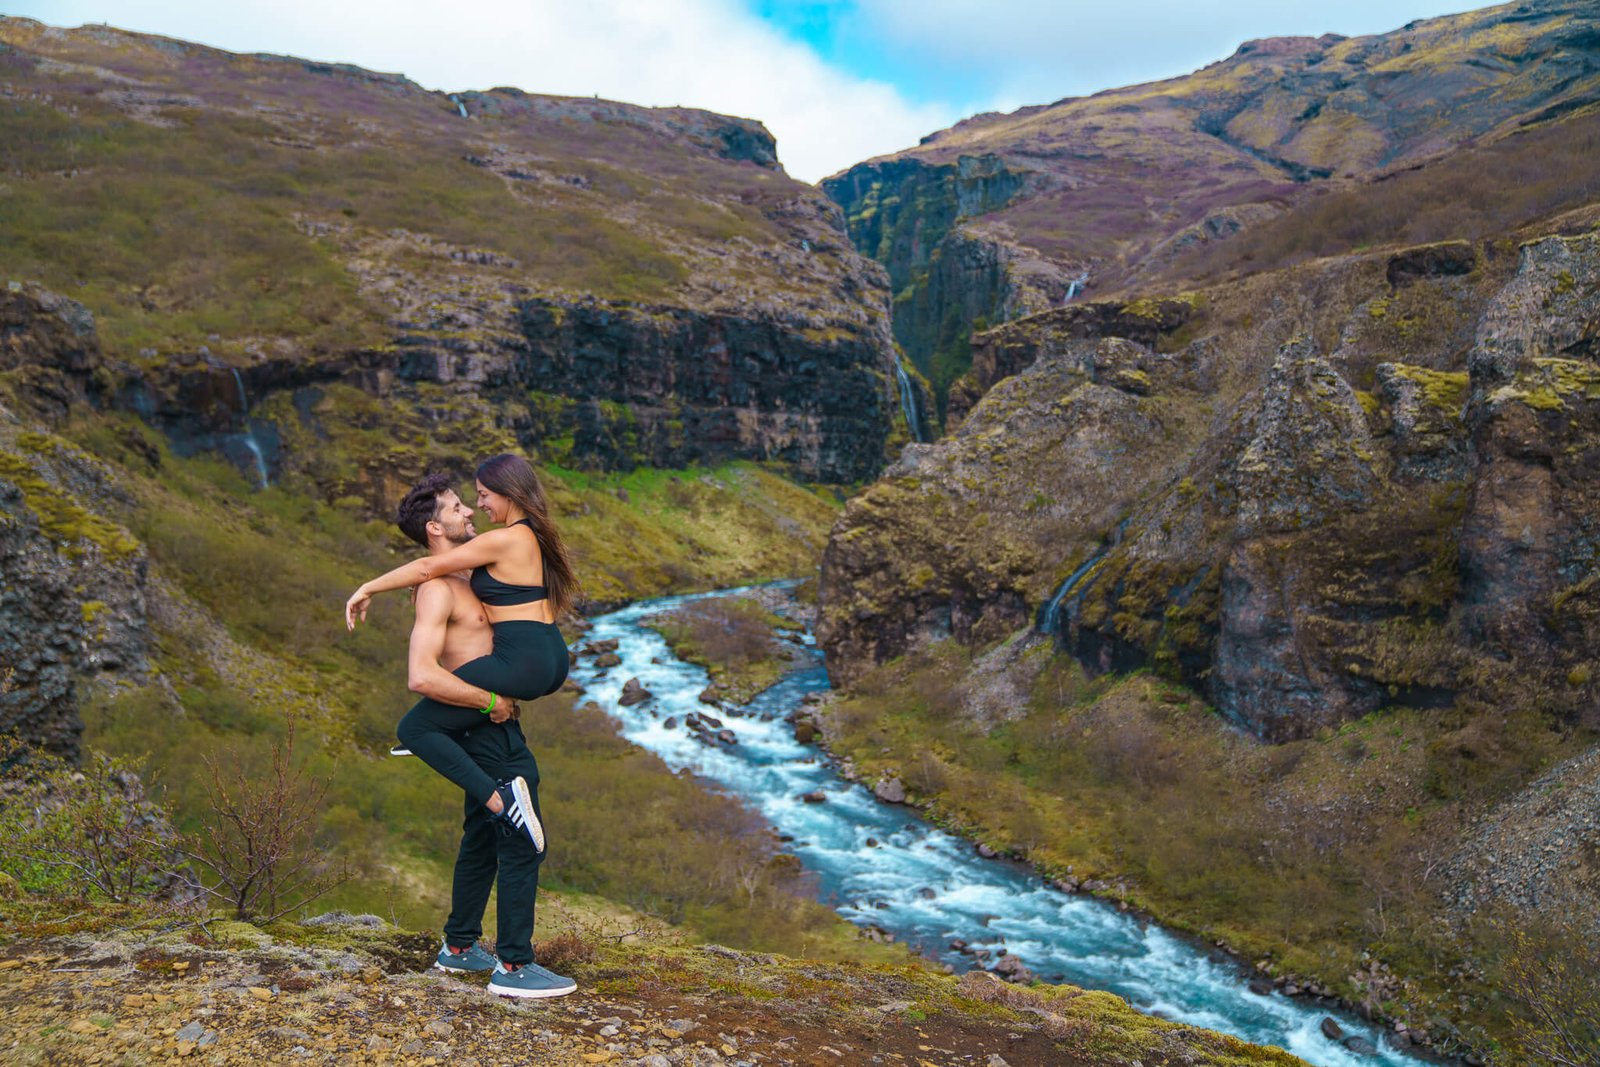 Glymur waterfall, Instagram spots in Iceland